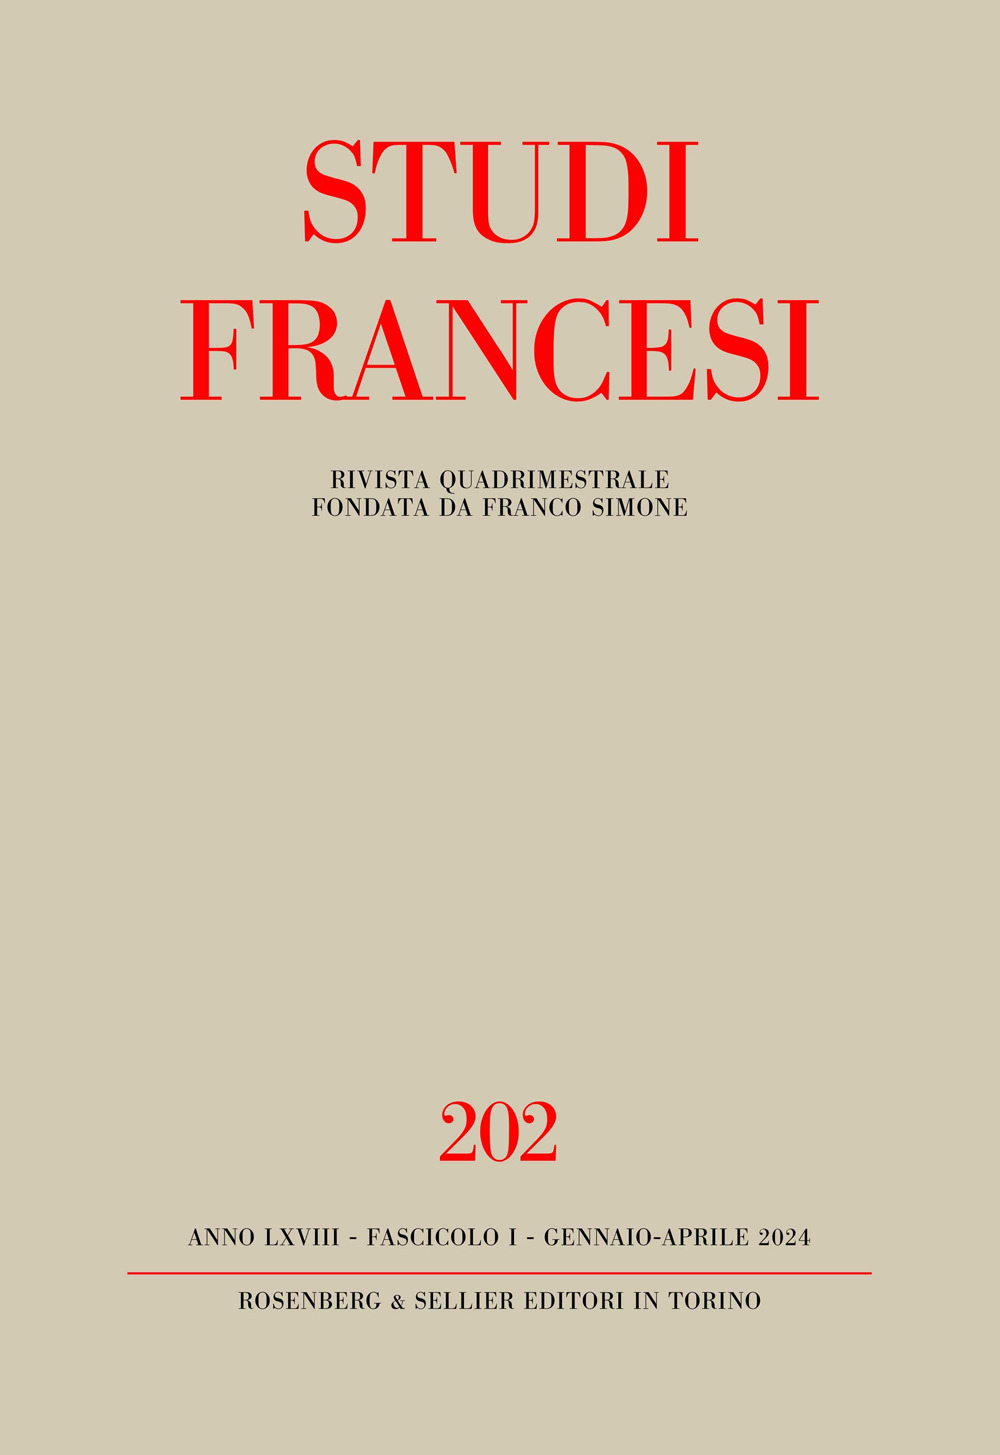 Studi francesi. Vol. 202